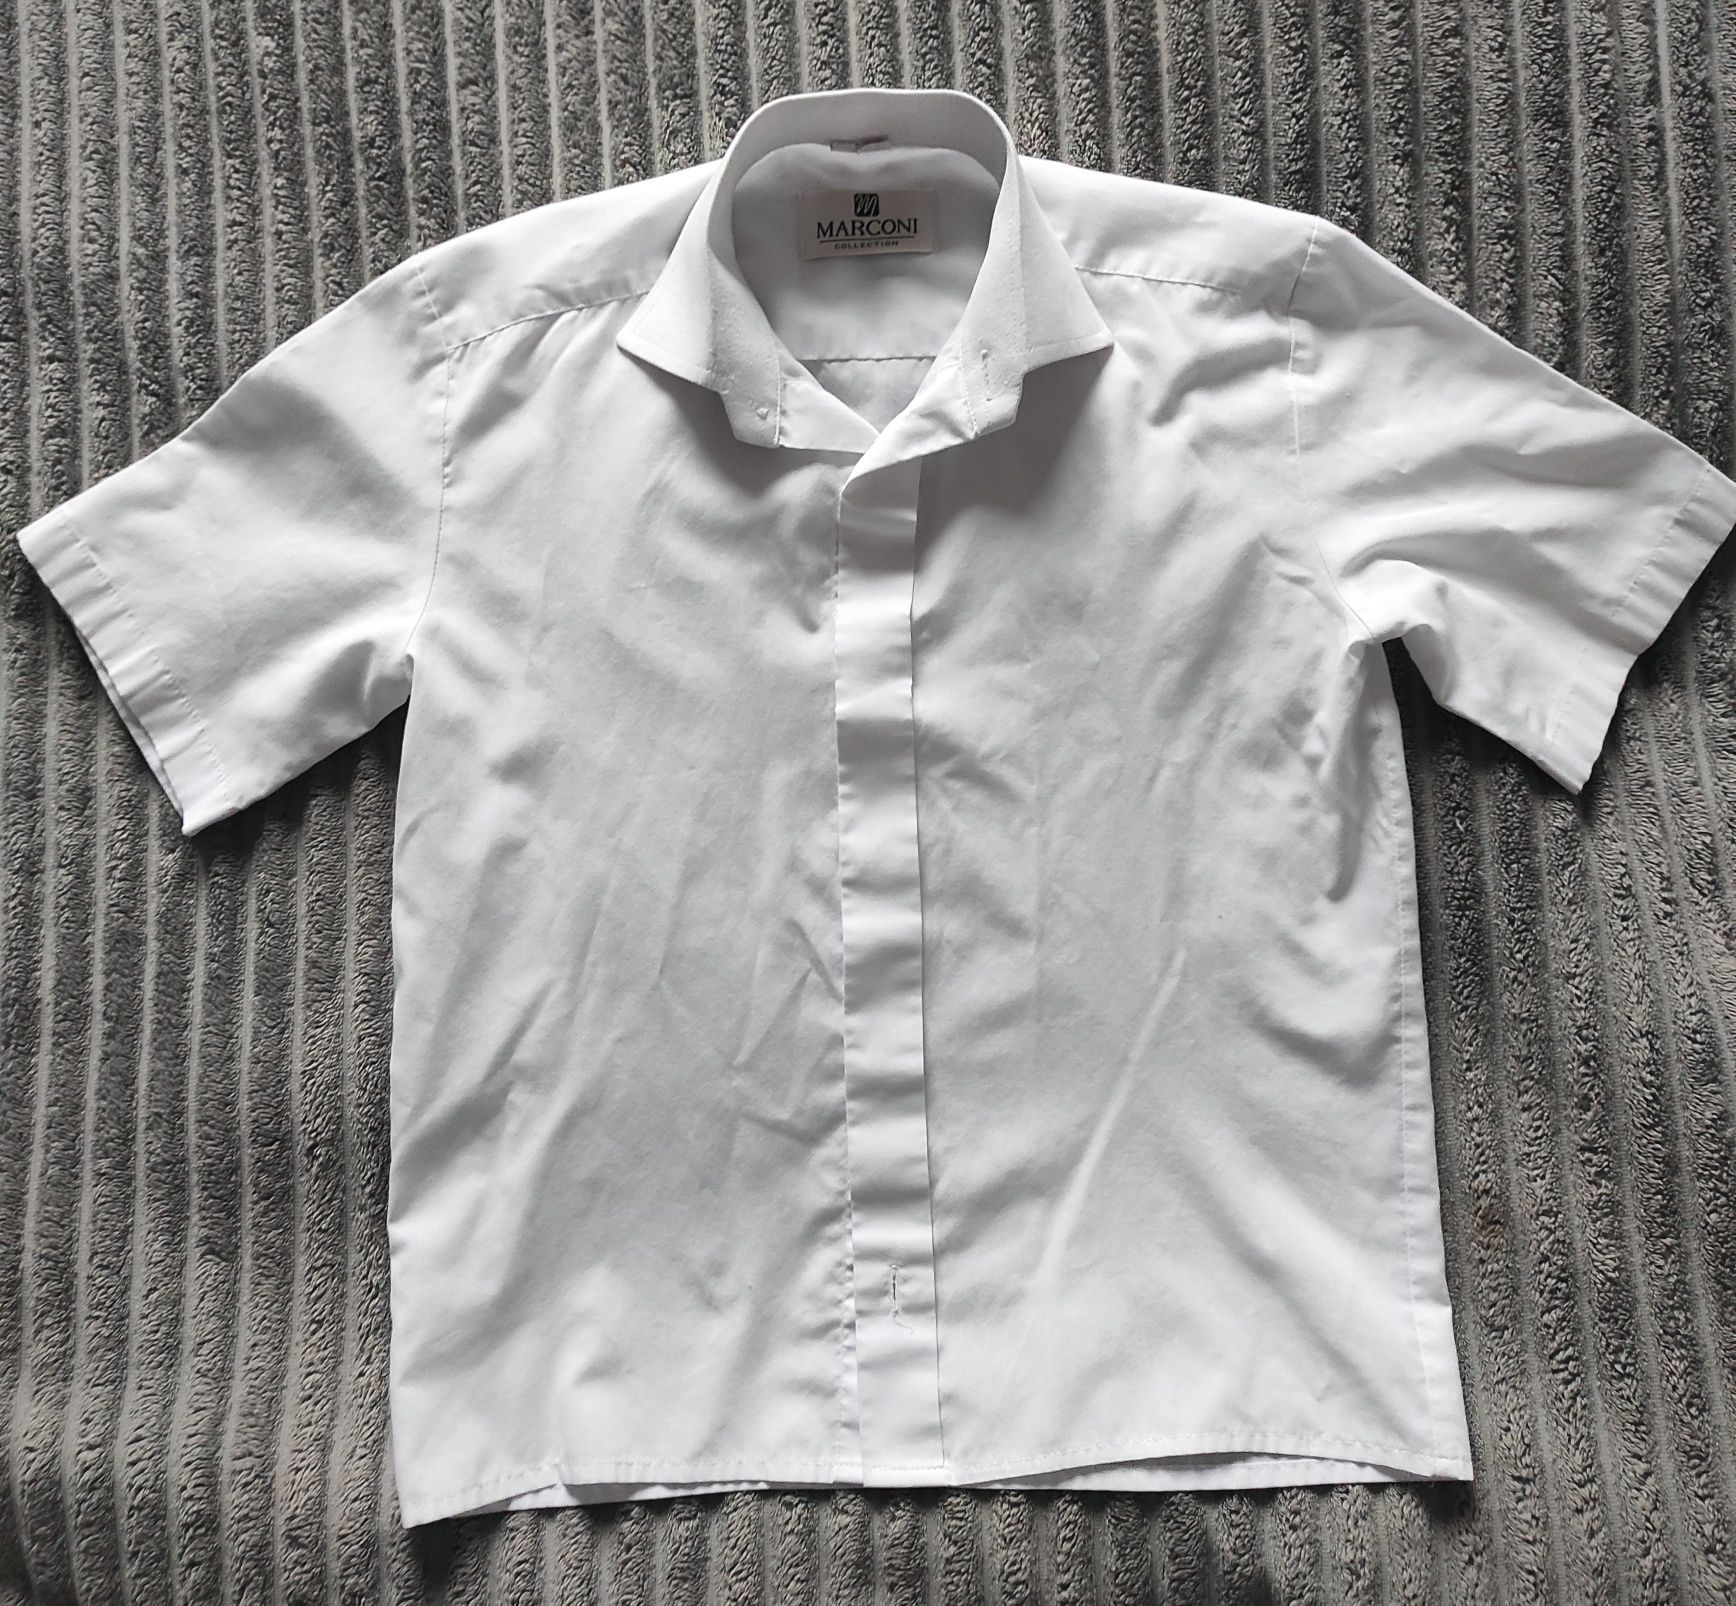 Biała koszula dla chłopca 128